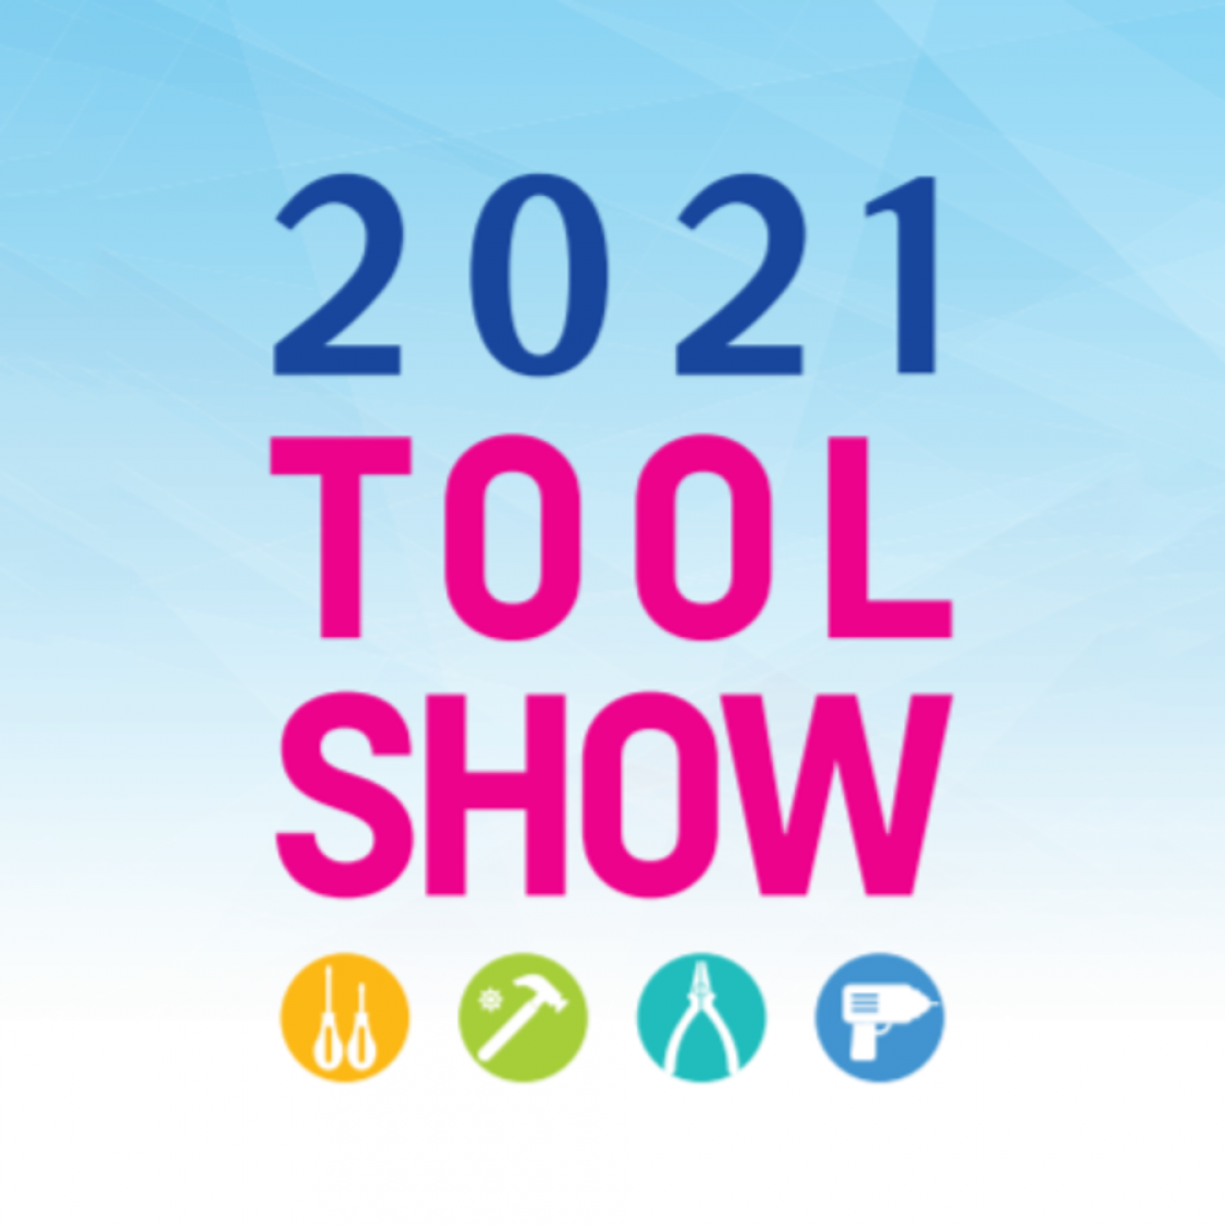 Выставка строительных инструментов Tool Show 2021